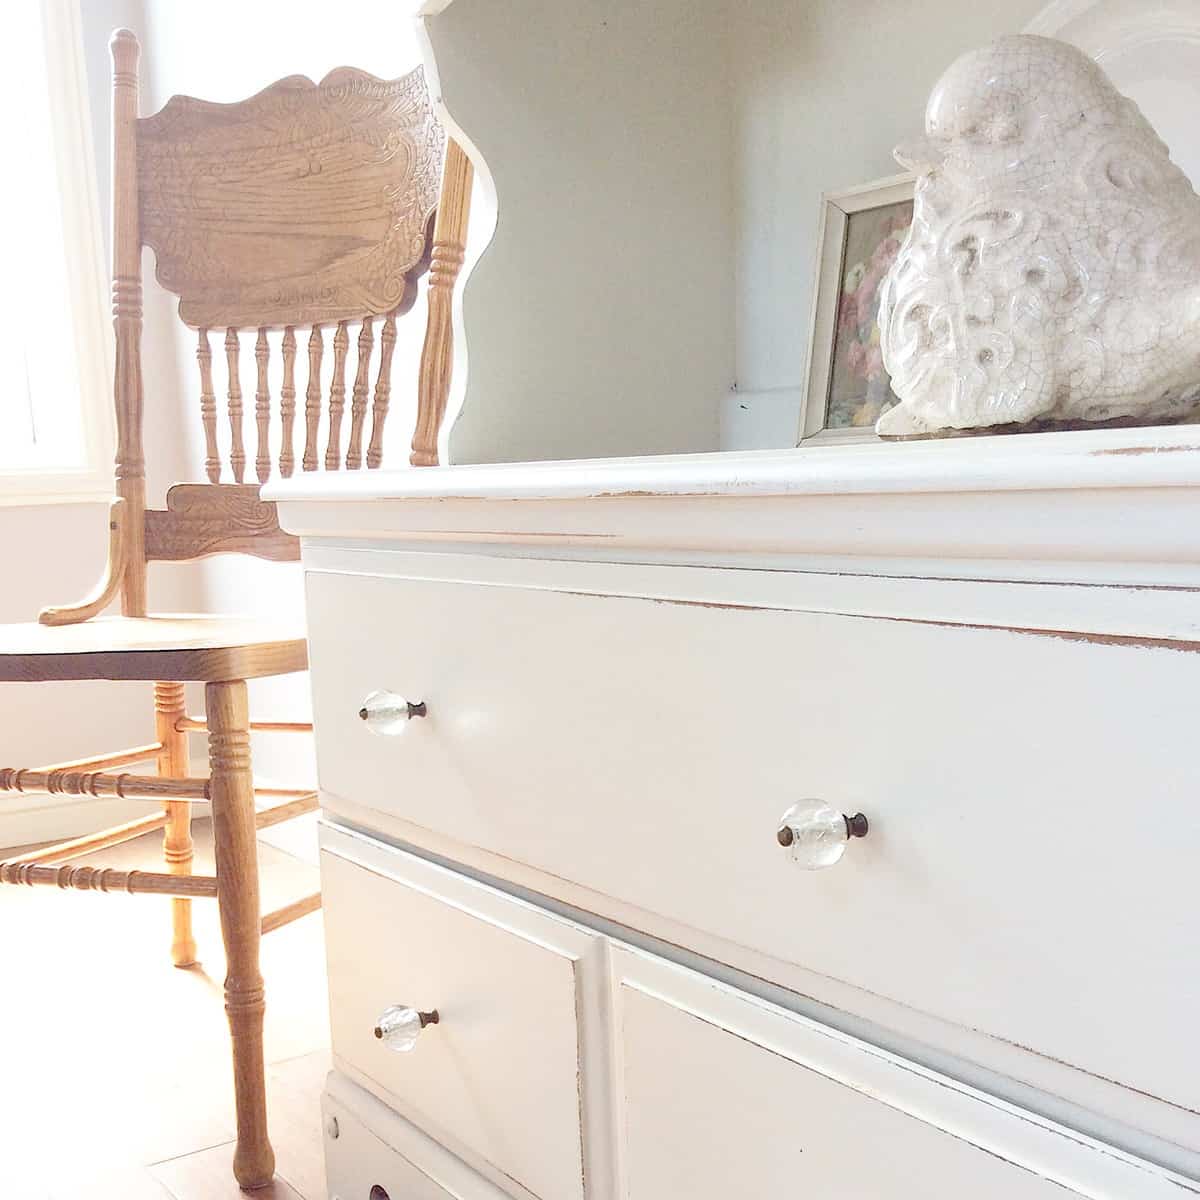 Vanilla Frosting Bookshelf #DIY #Furniturepaint #paintedfurniture #chalkpaint #homedecor #bookshelf #white #countrychicpaint - blog.countrychicpaint.com